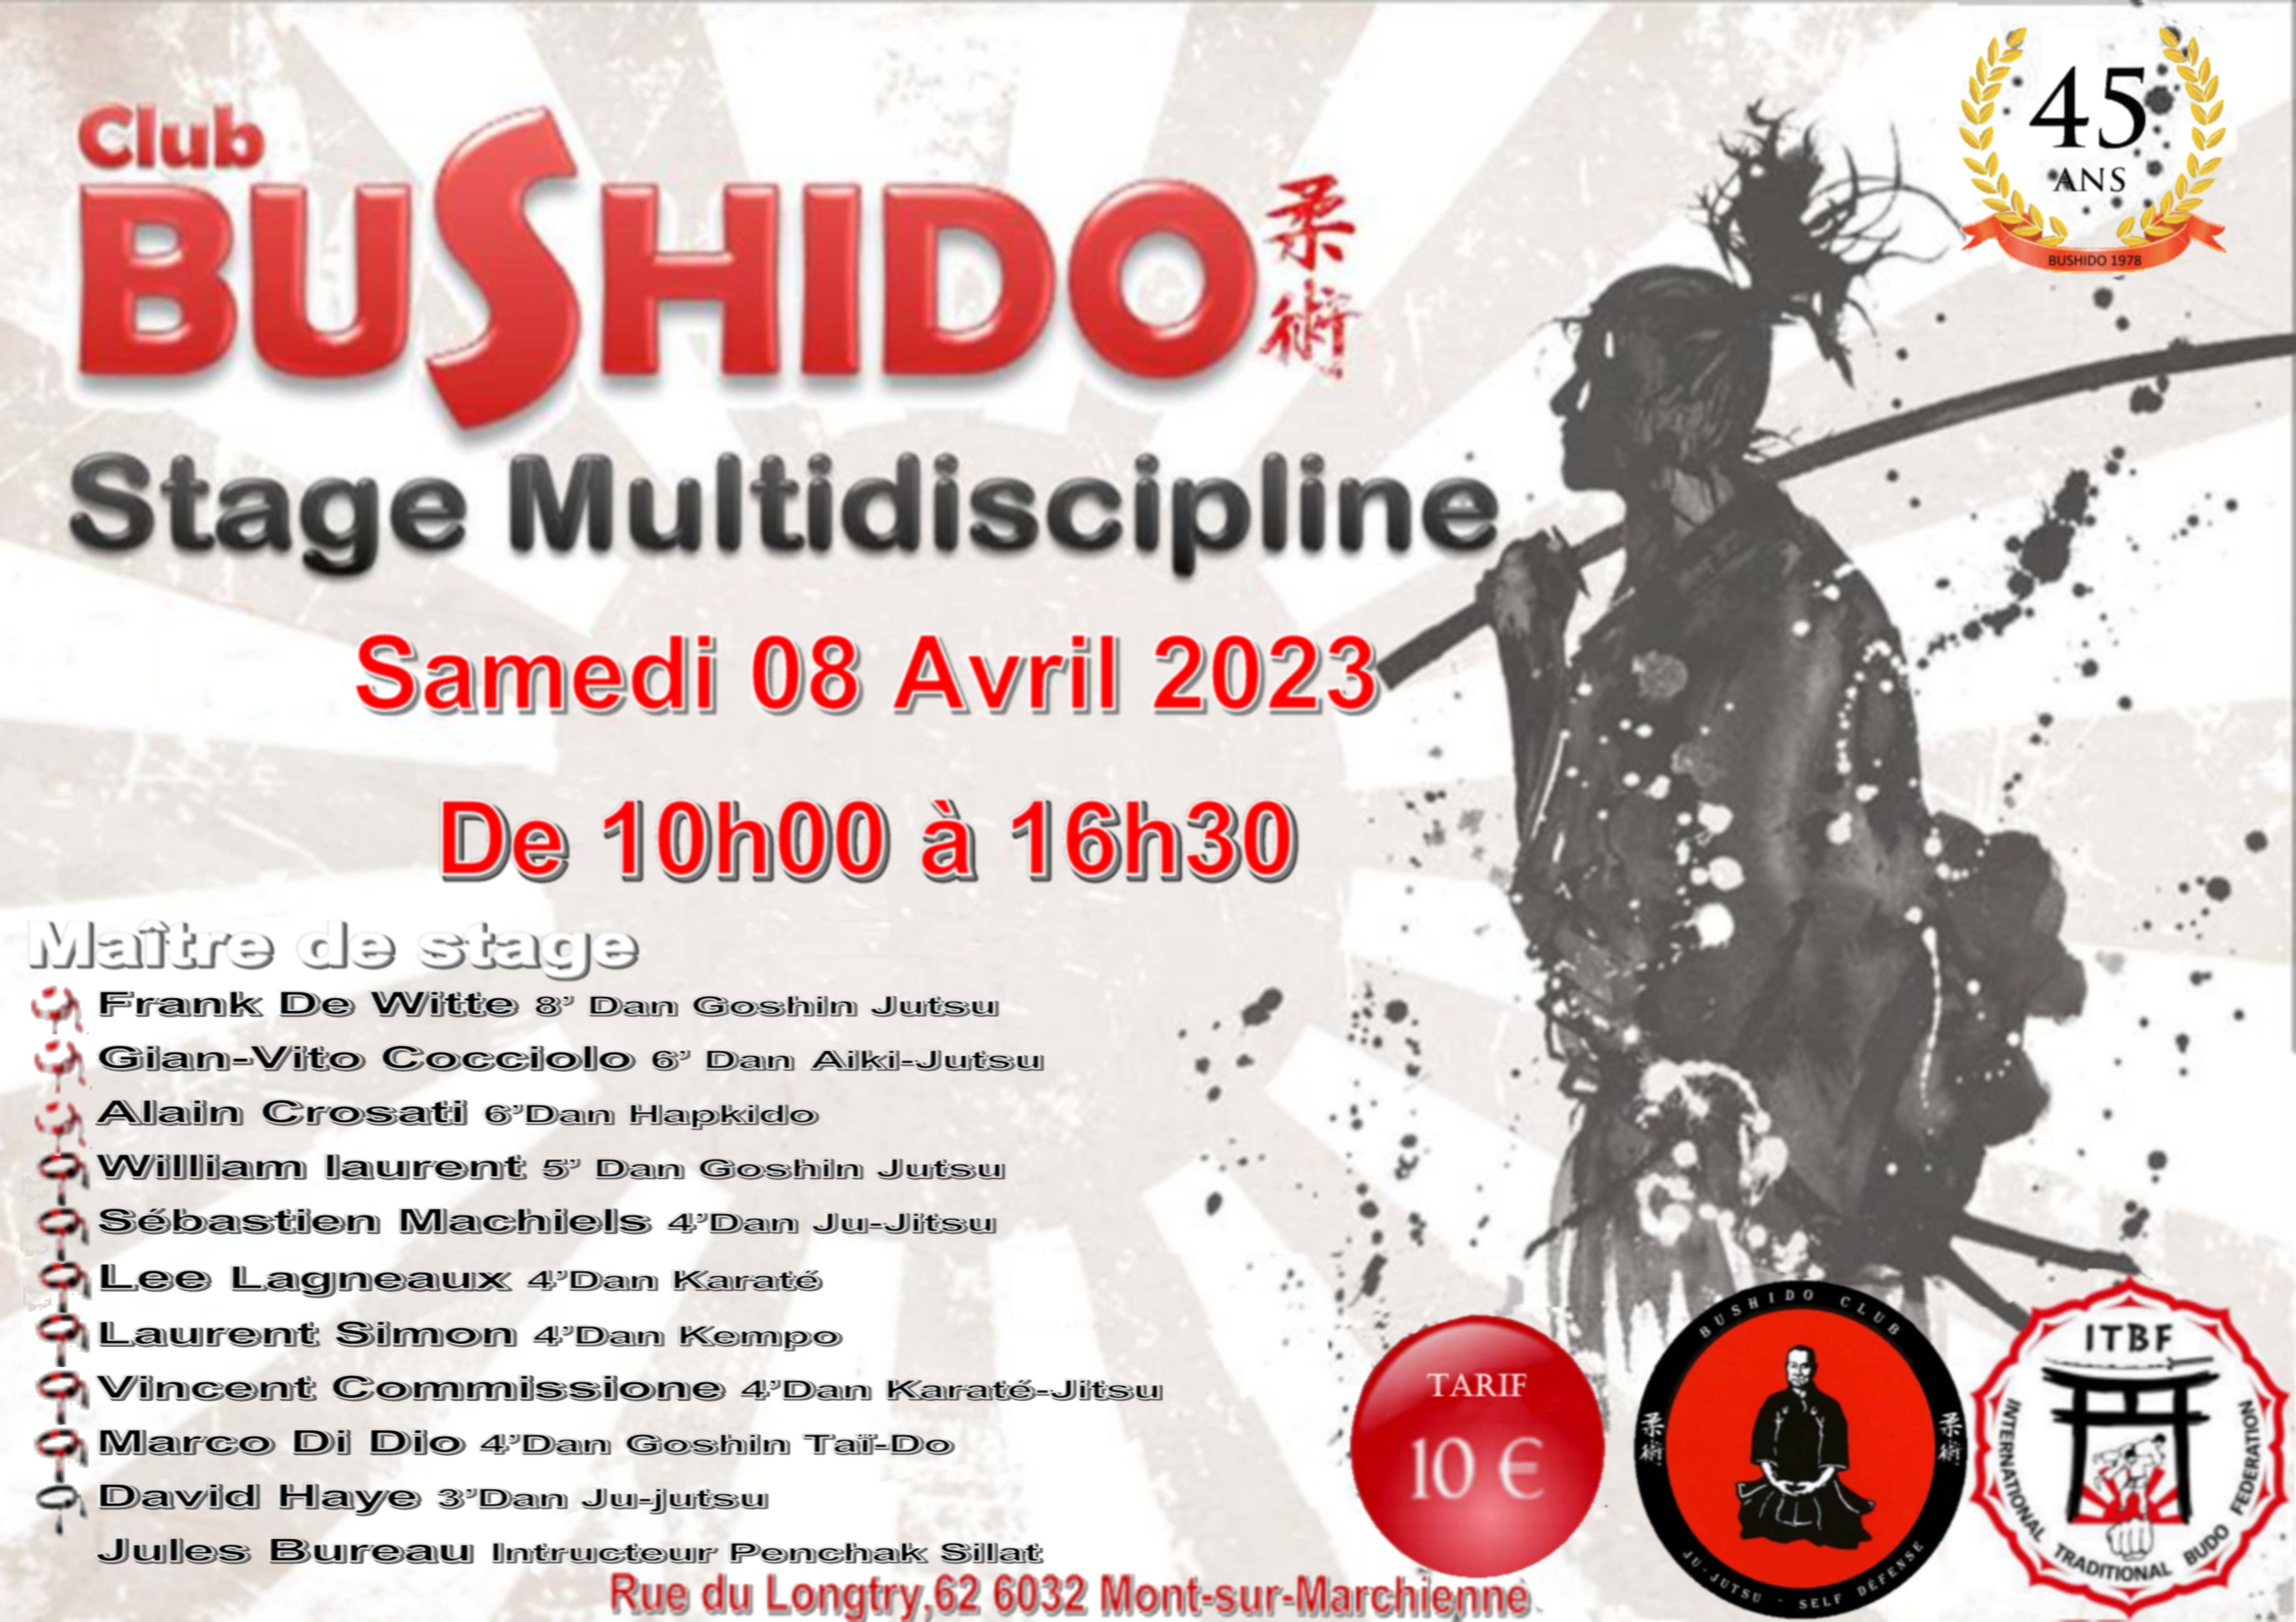 4’ stage multidisciplinaire organisé par le bushido club